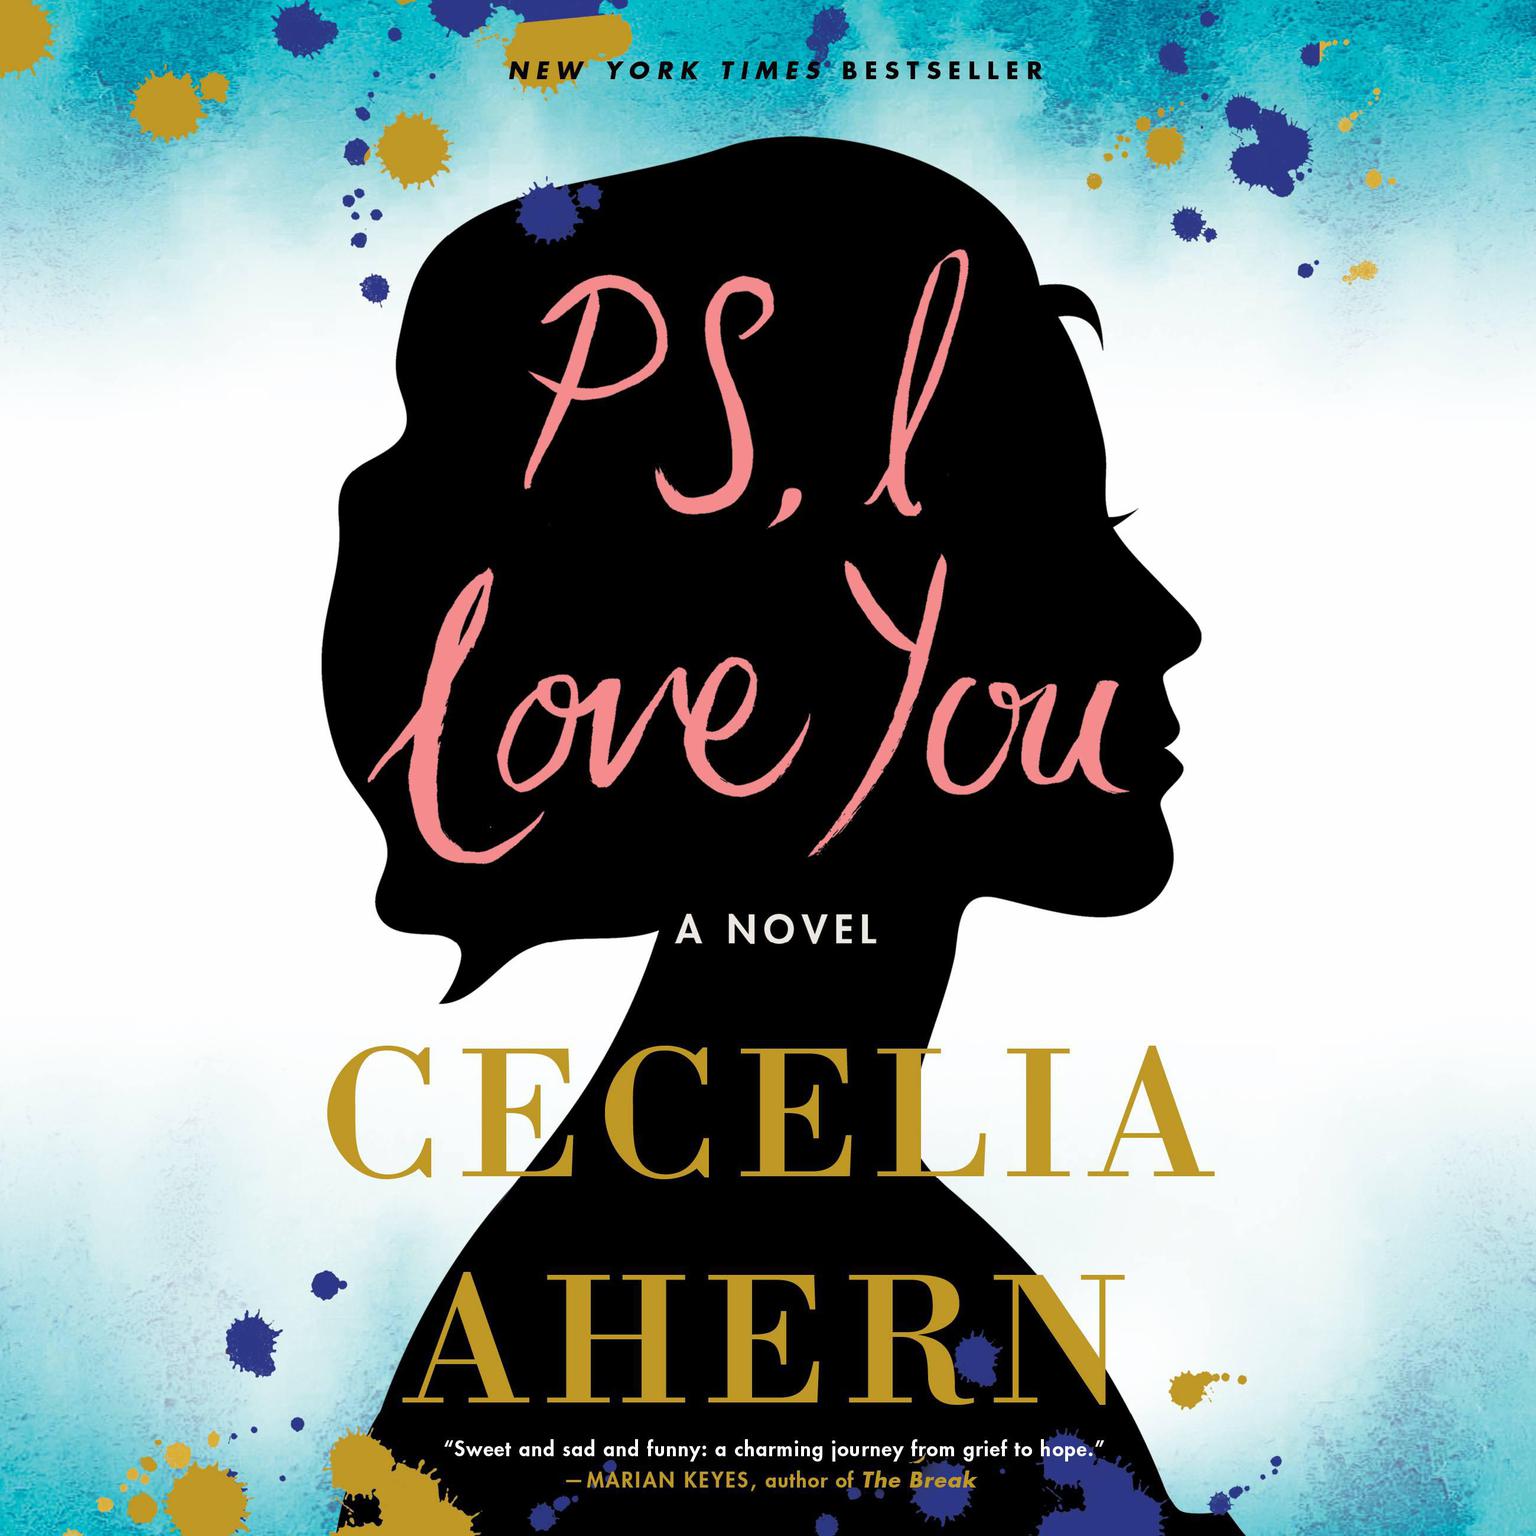 PS, I Love You: A Novel Audiobook, by Cecelia Ahern